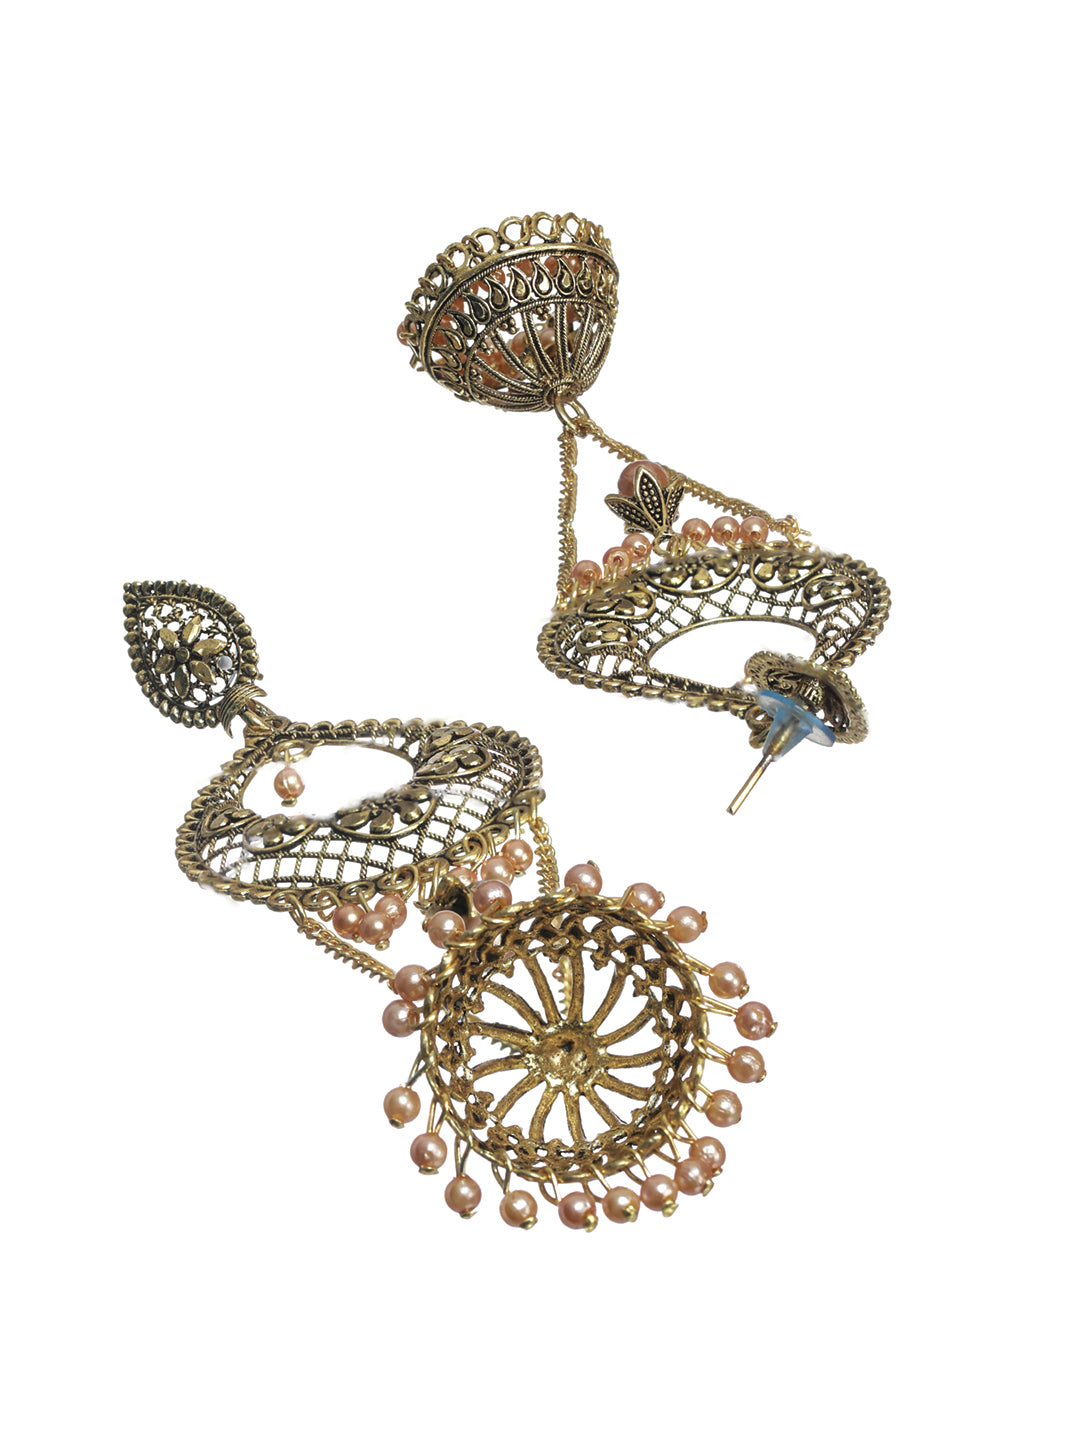 Priyaasi Floral Gold Plated Long Drop Jhumka Earrings